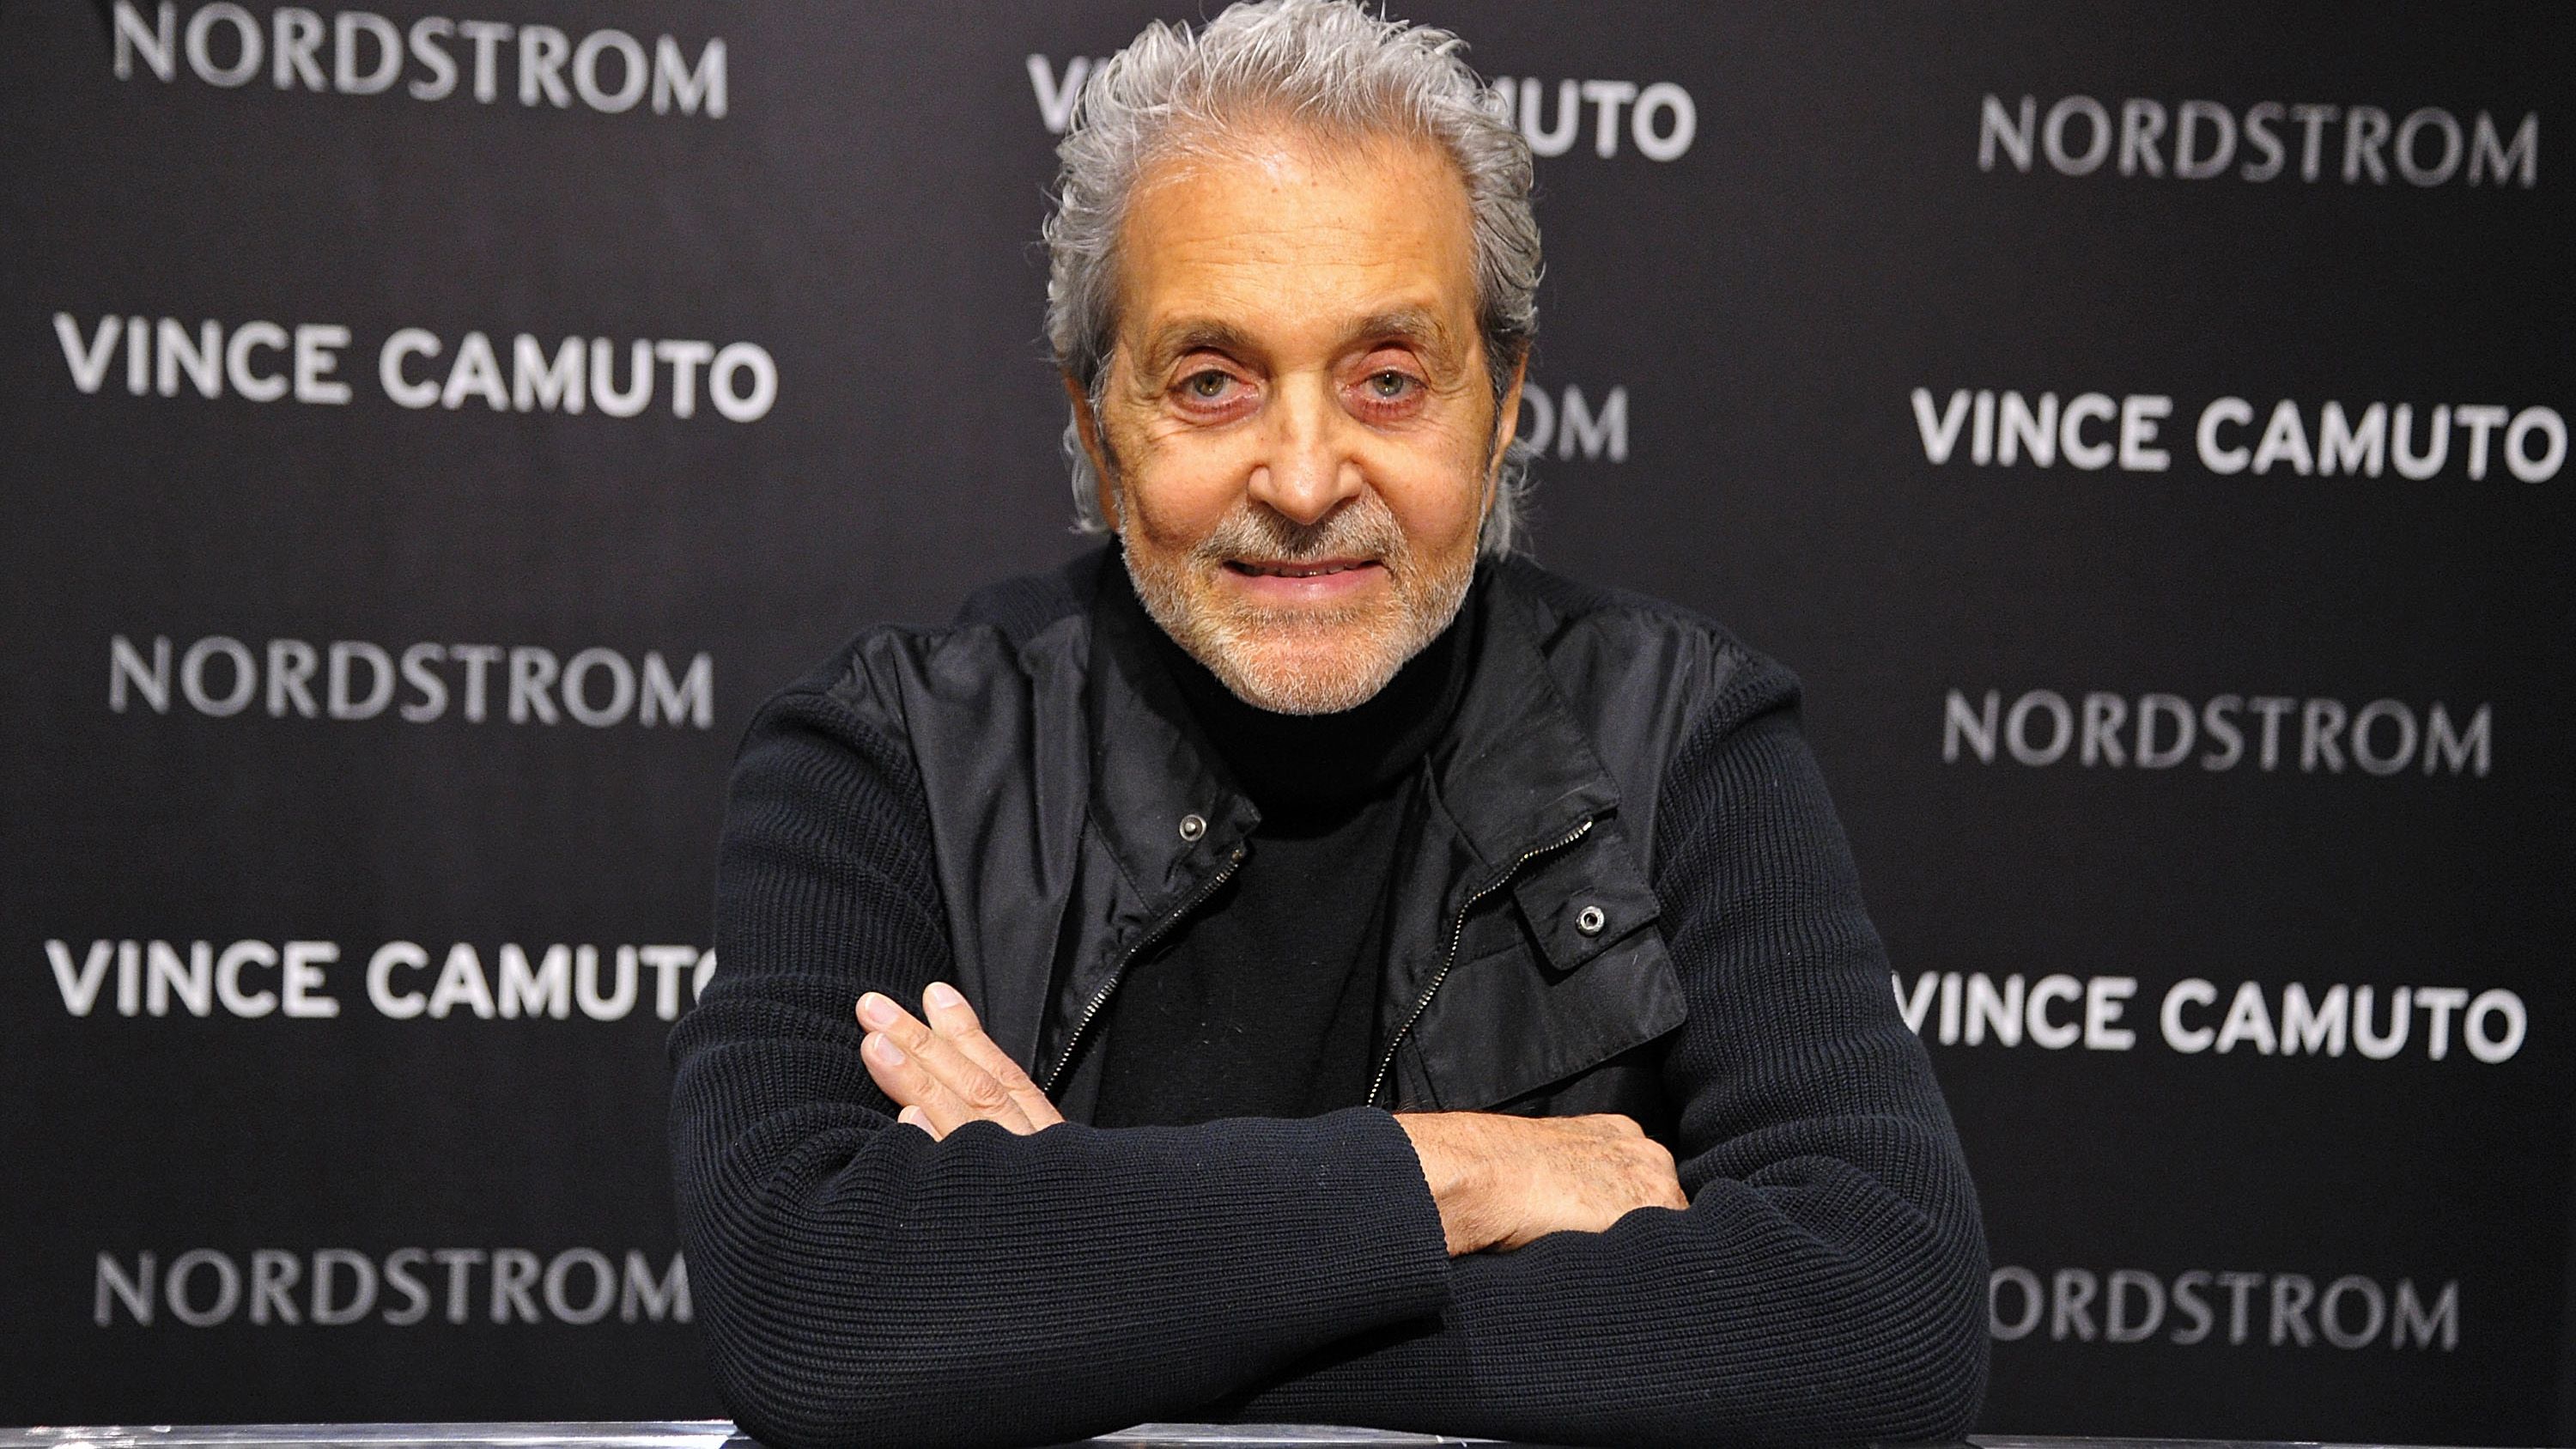 Designer Vince Camuto, co-founder of Nine West, dies at 78